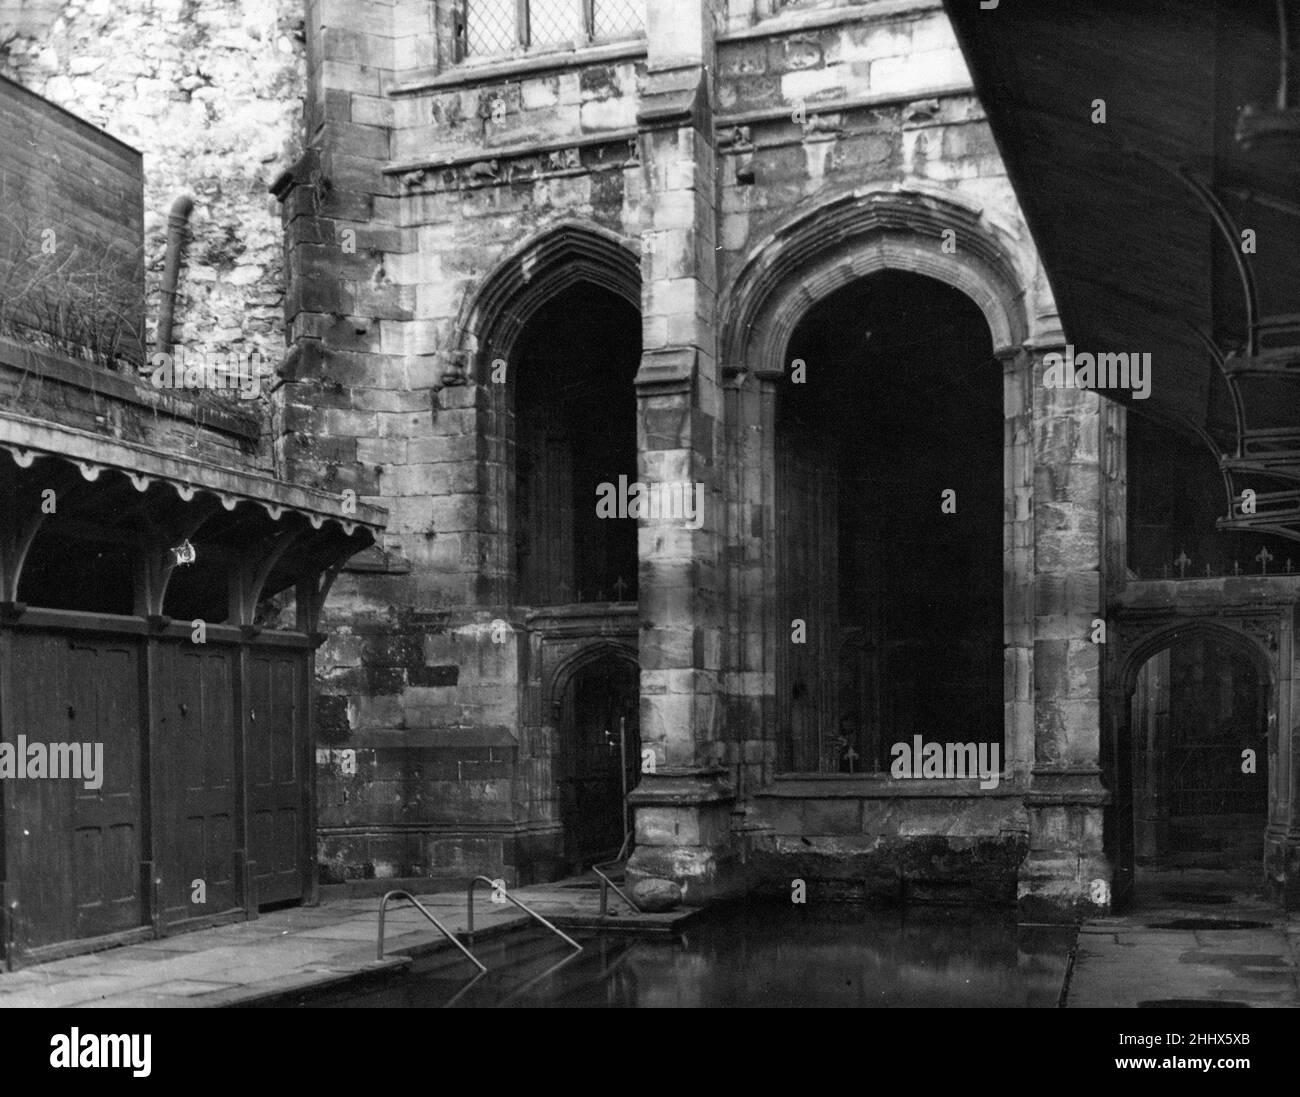 St. Winefride's Well Shrine in Holywell, Flintshire, Wales, 15th. Dezember 1949. Unser Bild zeigt ... Badekabinen und ein großes Bad für Pilger zum Eintauchen. Auch bekannt als Winifred's Well, behauptet es, der älteste ständig besuchte Wallfahrtsort in Großbritannien zu sein (über 1300 Jahre) und ist ein denkmalgeschütztes Gebäude der Klasse I. Pilger haben den Brunnen von St. Winefride im Laufe der Geschichte besucht, um Heilung zu suchen. Stockfoto